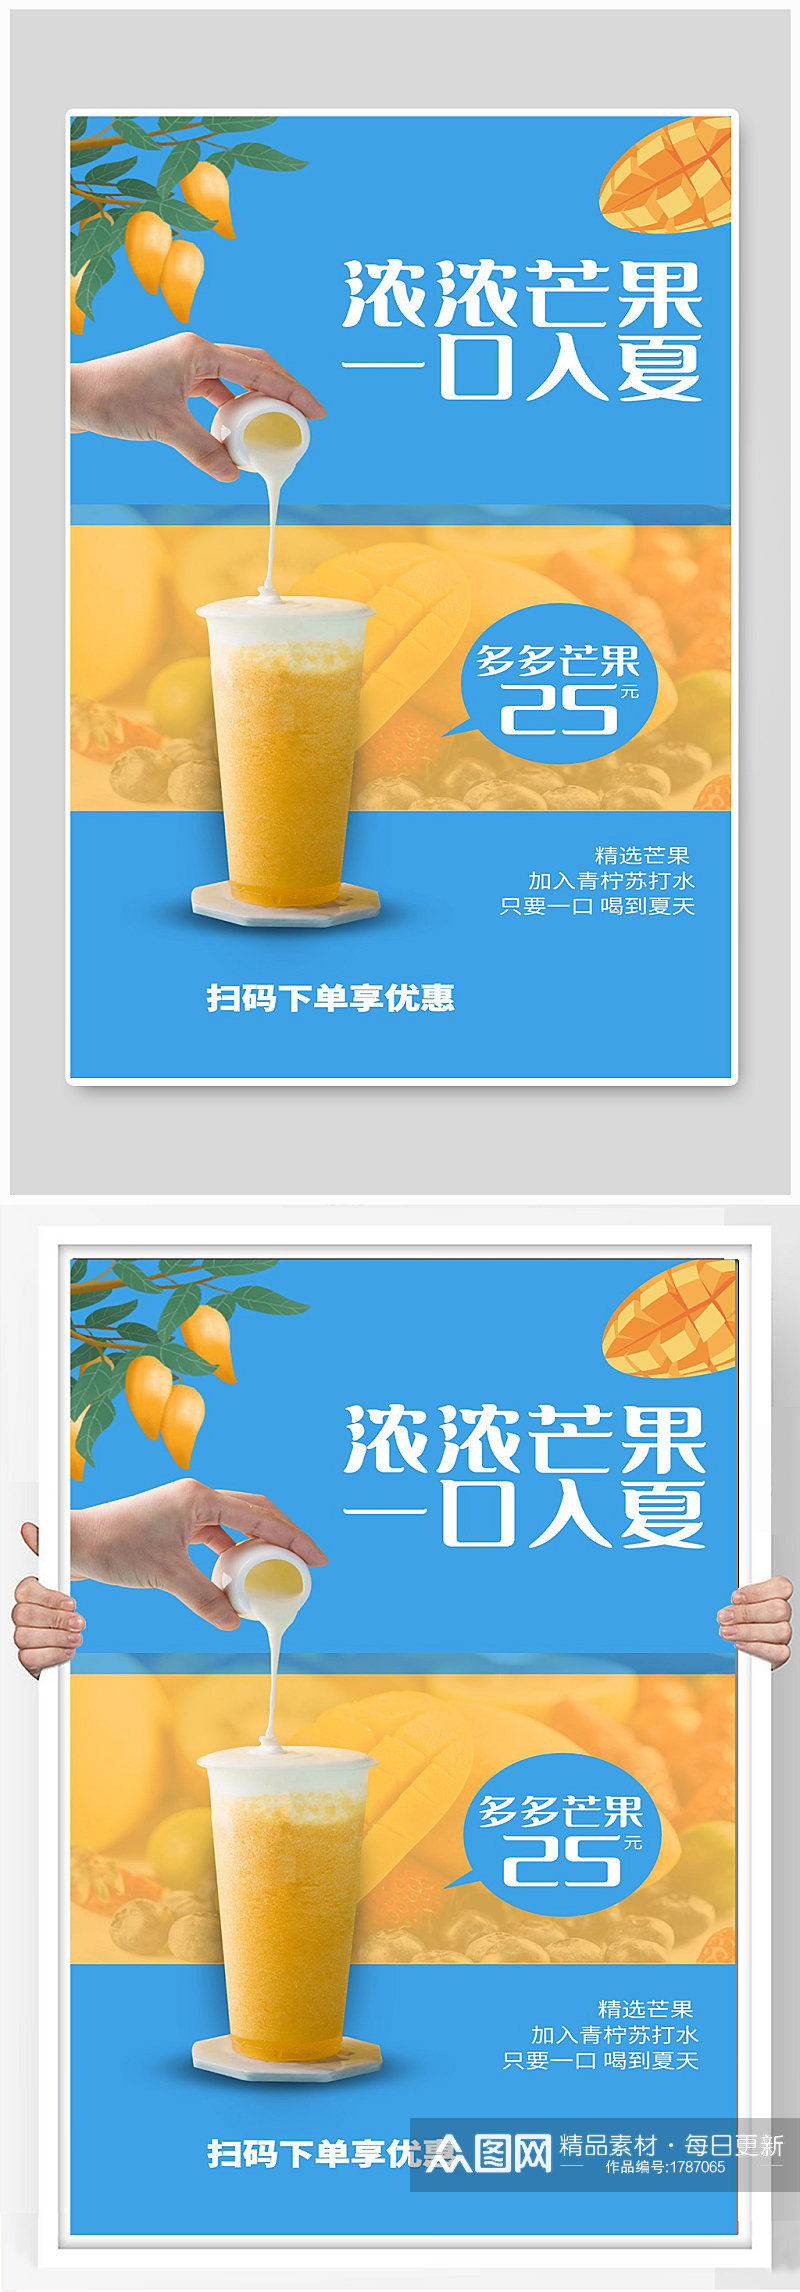 芒果宣传果汁海报设计素材